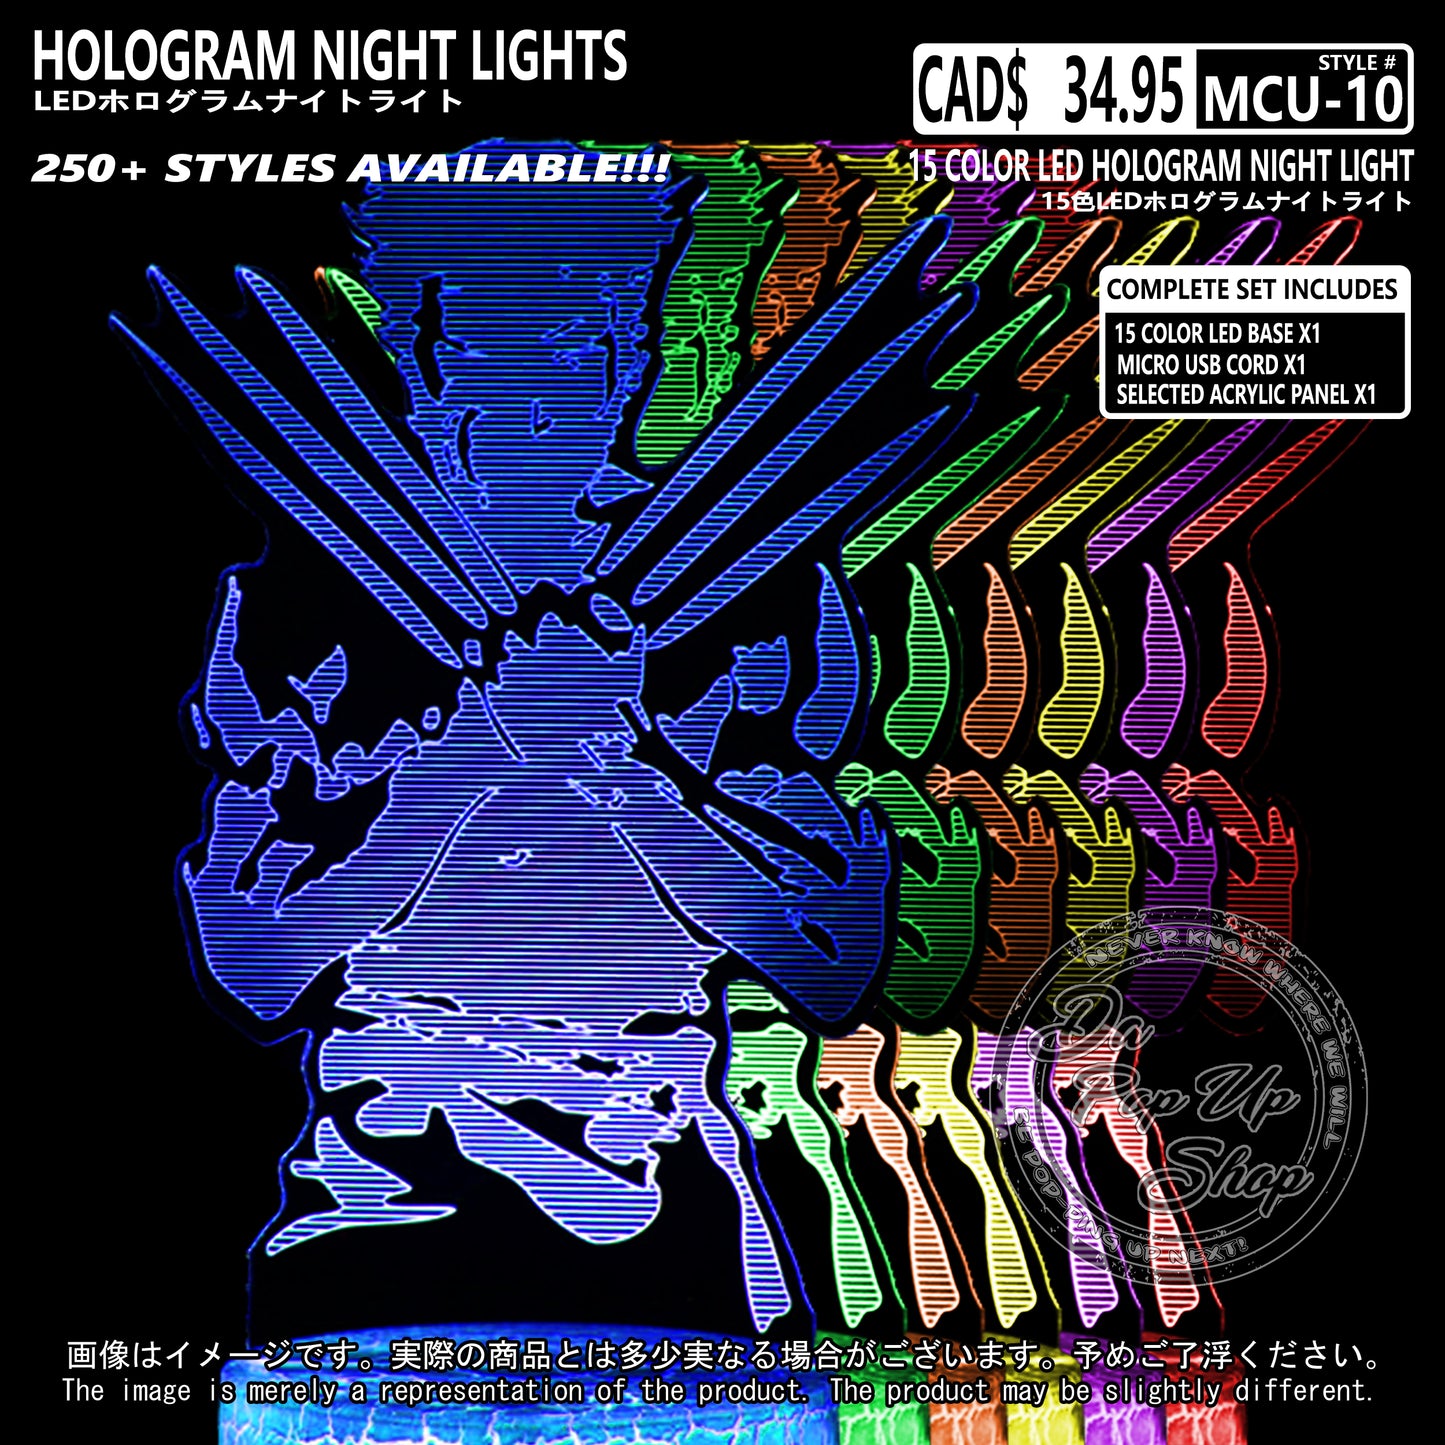 (MCU-10) MCU Marvel Cinematic Universal Hologram LED Night Light